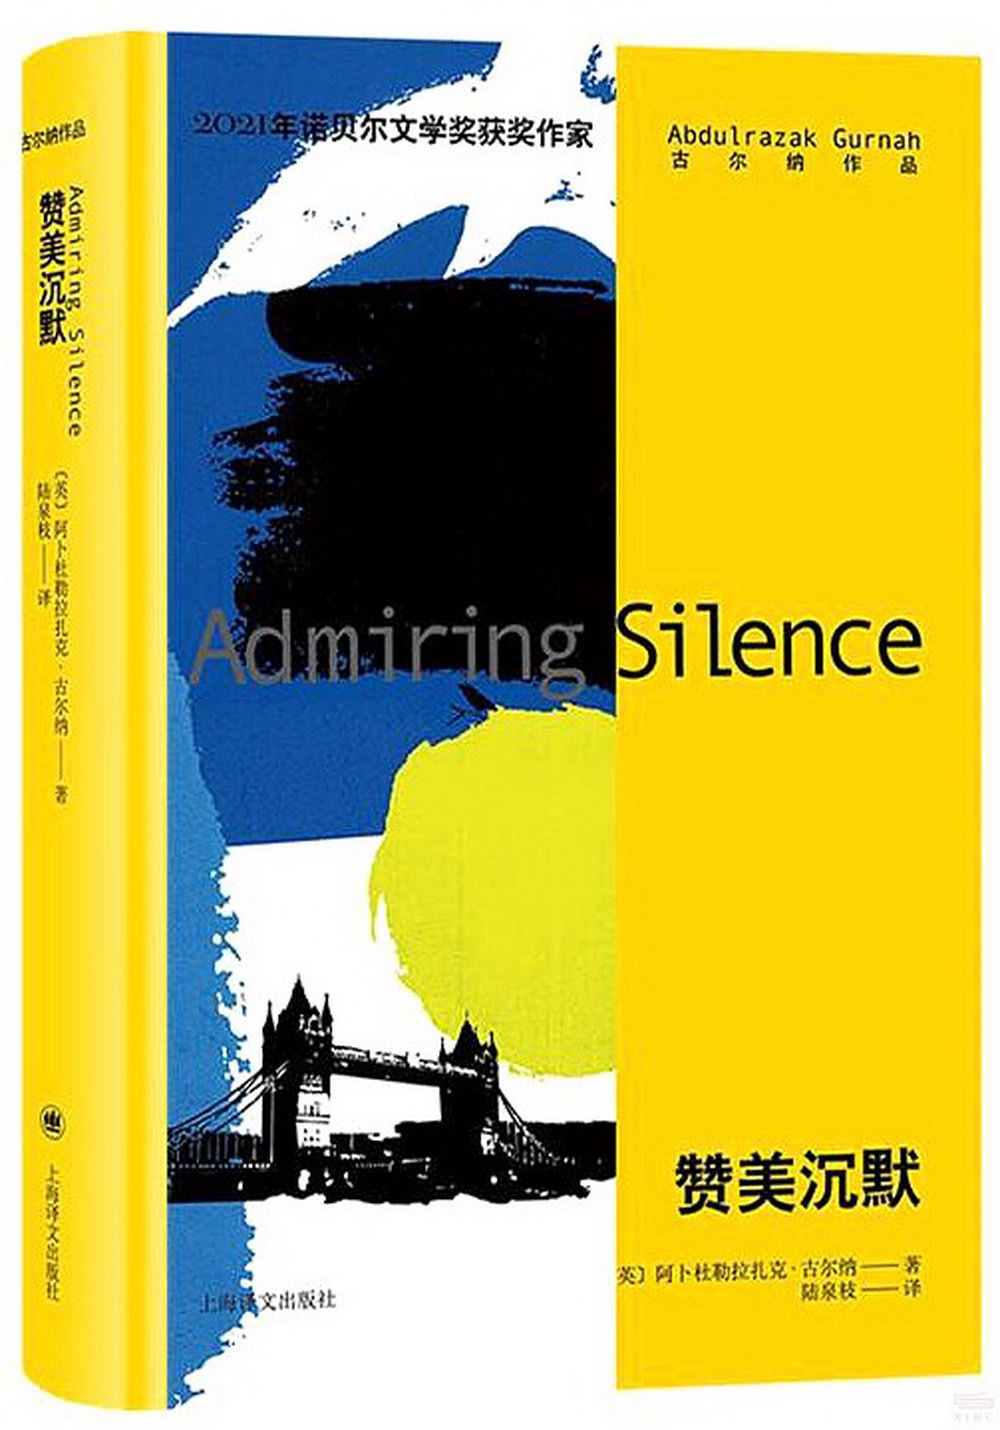 古爾納作品：讚美沉默(2021年諾貝爾文學獎得主作品)